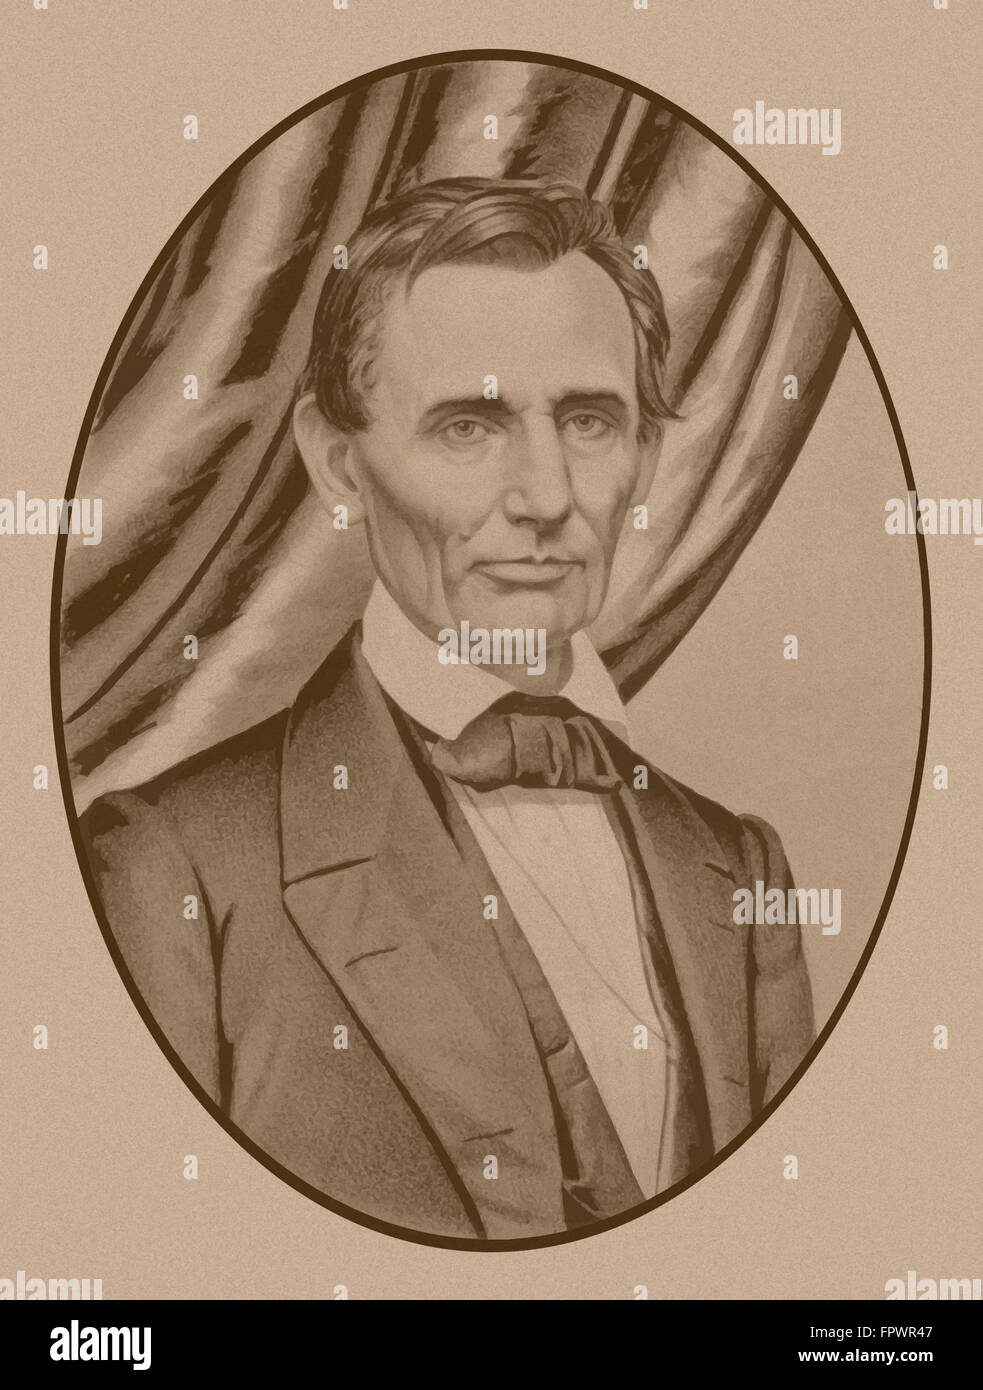 Porträt von Abe Lincoln als glatt rasiert Kandidat für die Präsidentschaft von den Vereinigten Staaten von Amerika, um 1860. Stockfoto